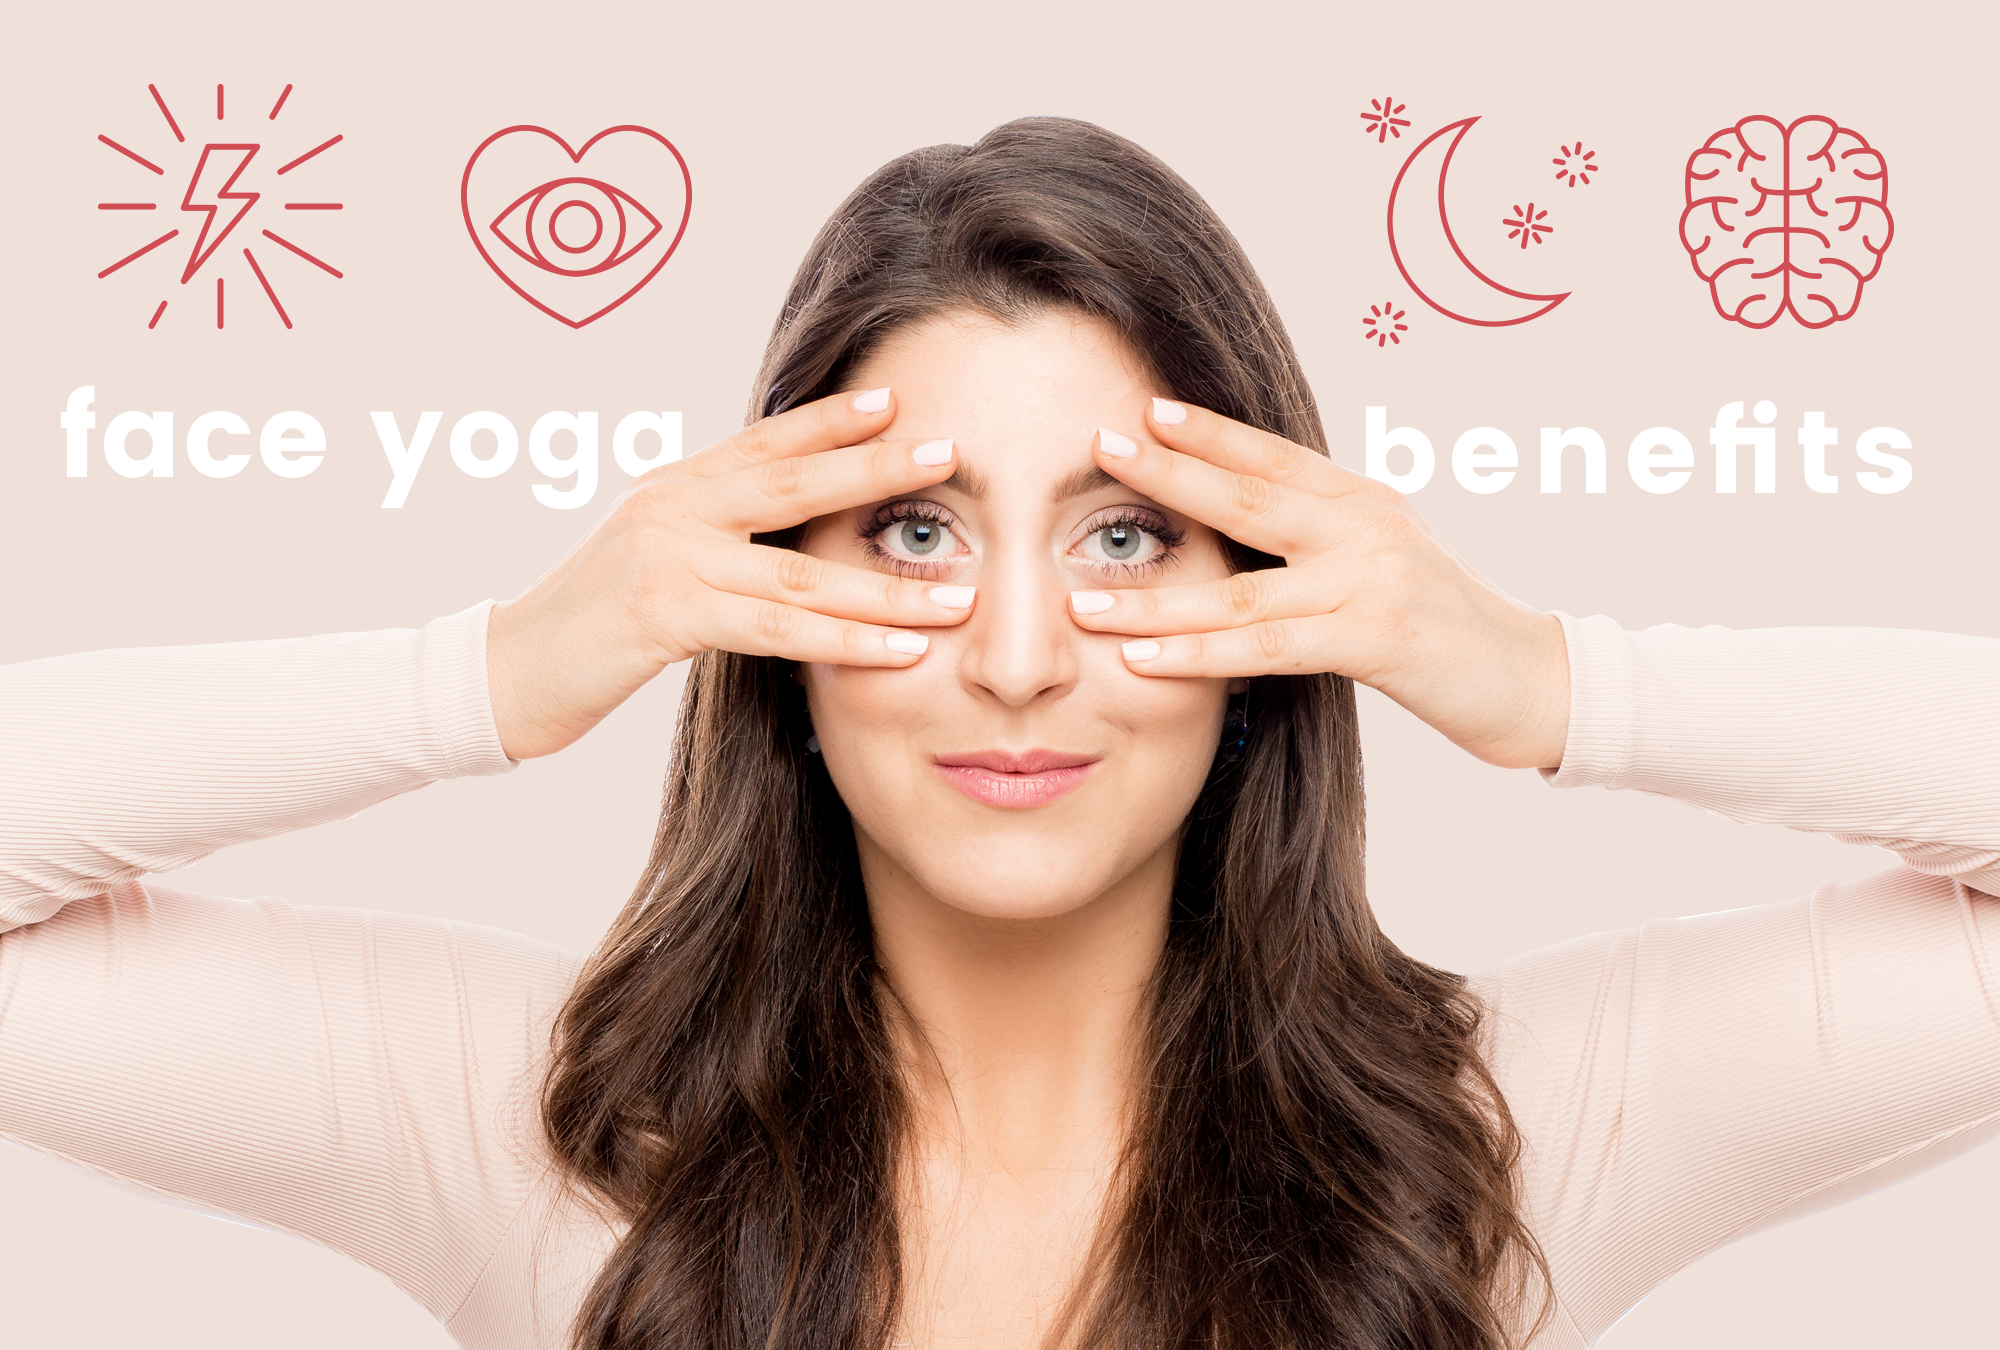 یوگا صورت یک روش طبیعی و موثر برای تقویت عضلات صورت و کاهش چین و چروک‌هاست.